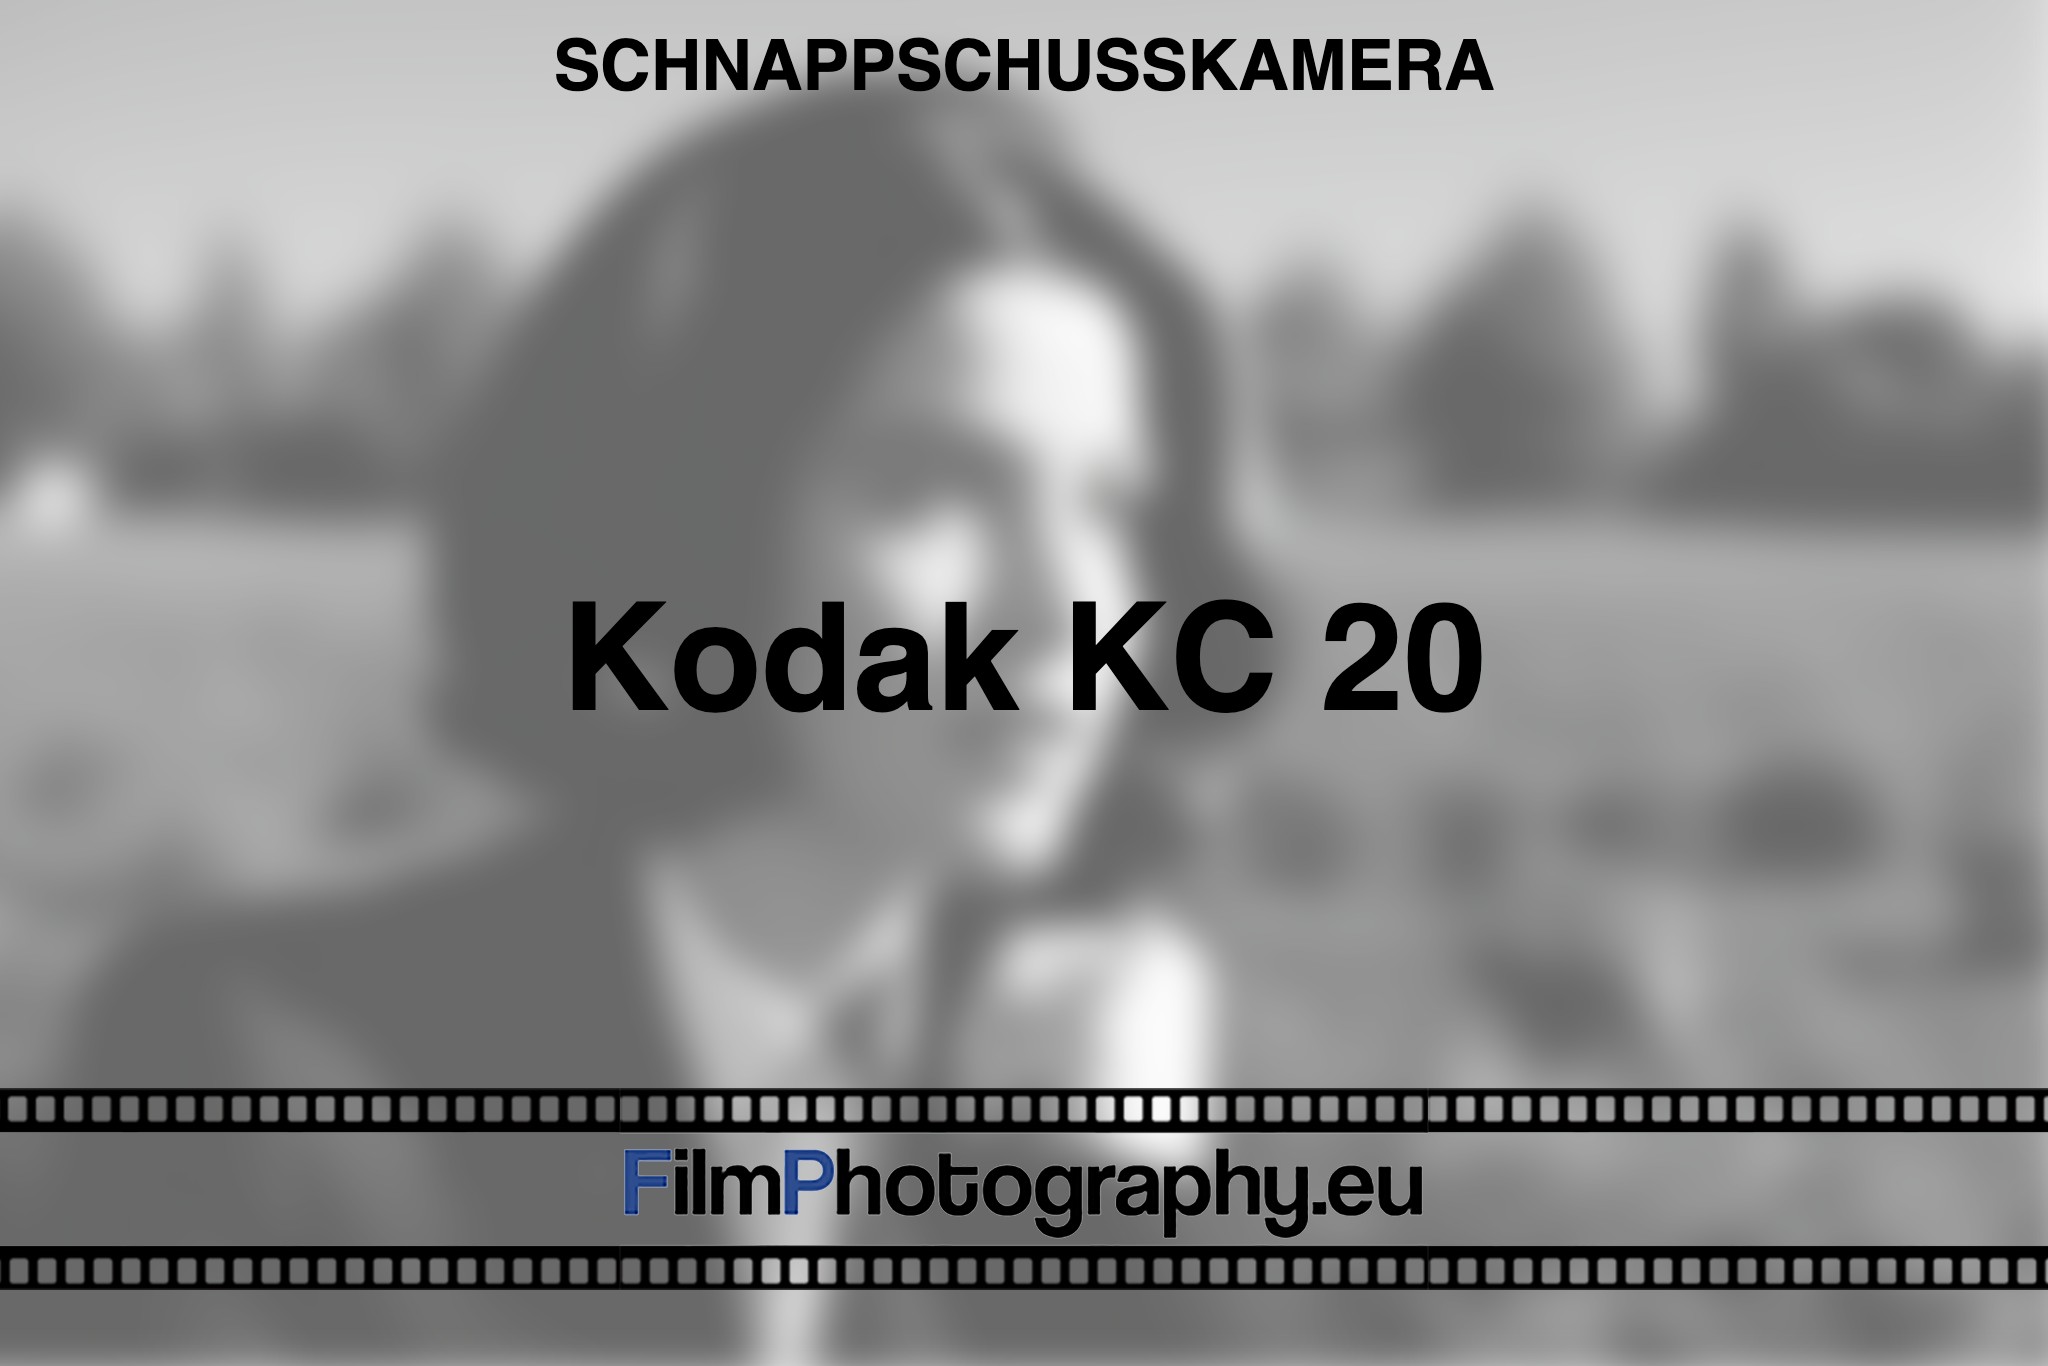 kodak-kc-20-schnappschusskamera-bnv